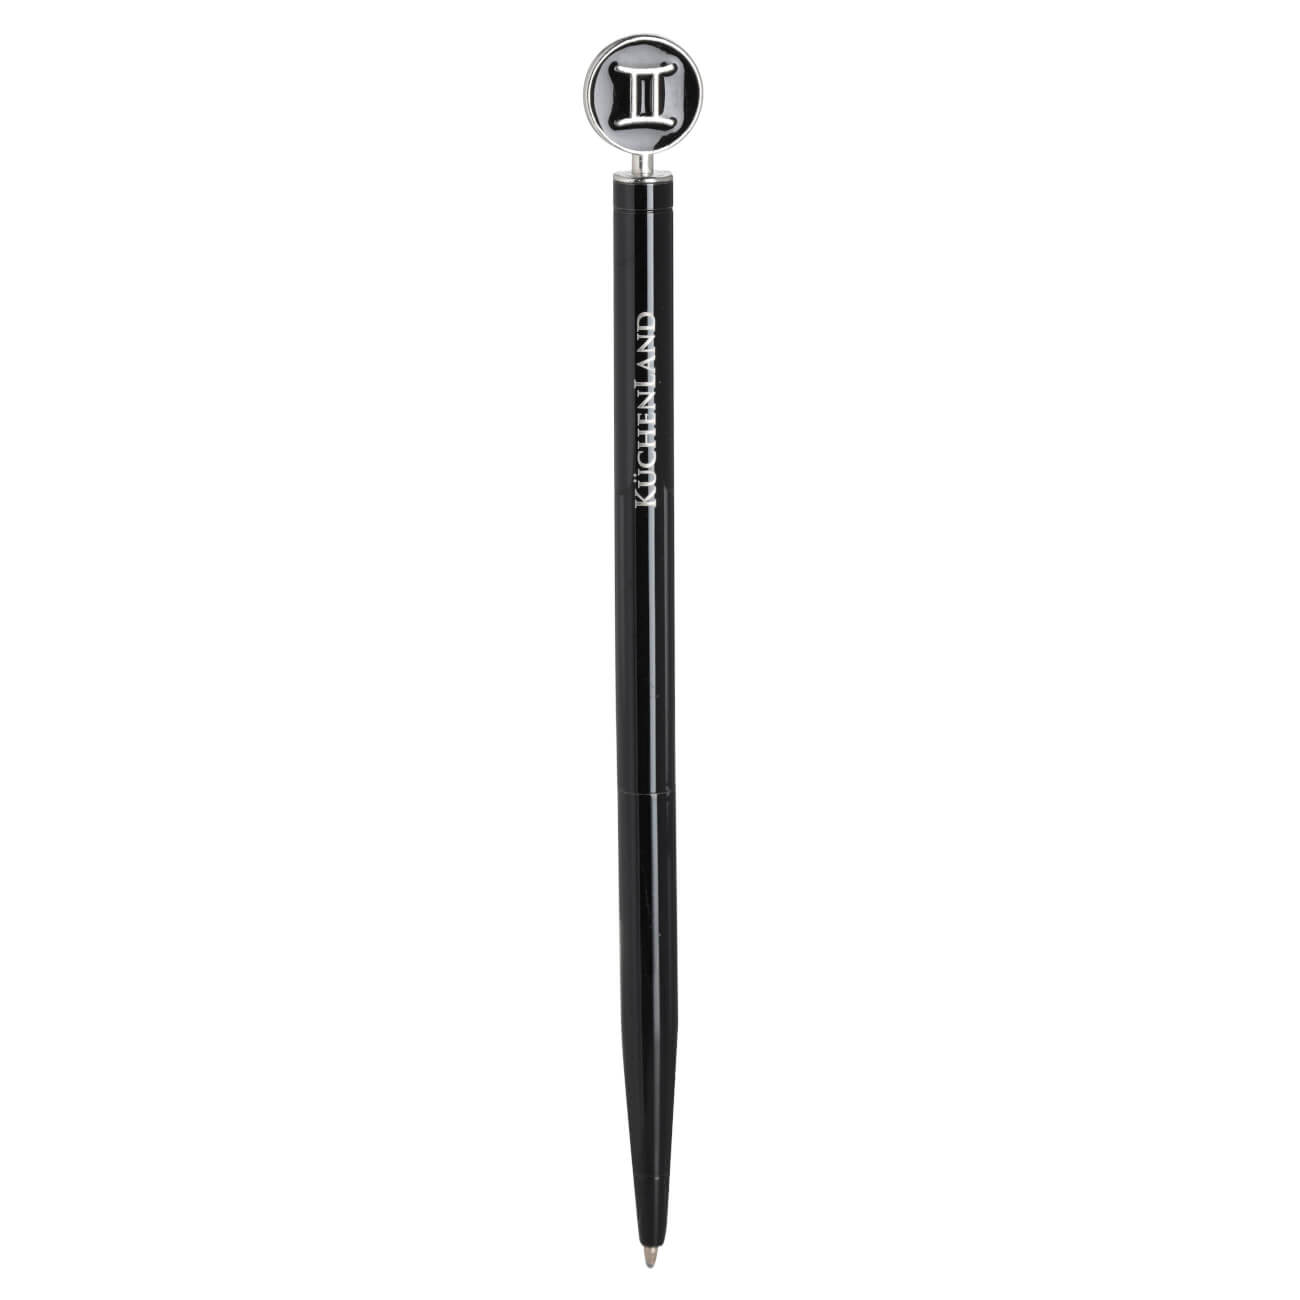 Ручка шариковая, 15 см, с фигуркой, сталь, черно-серебристая, Близнецы, Zodiac грабли длина 25 см деревянная ручка